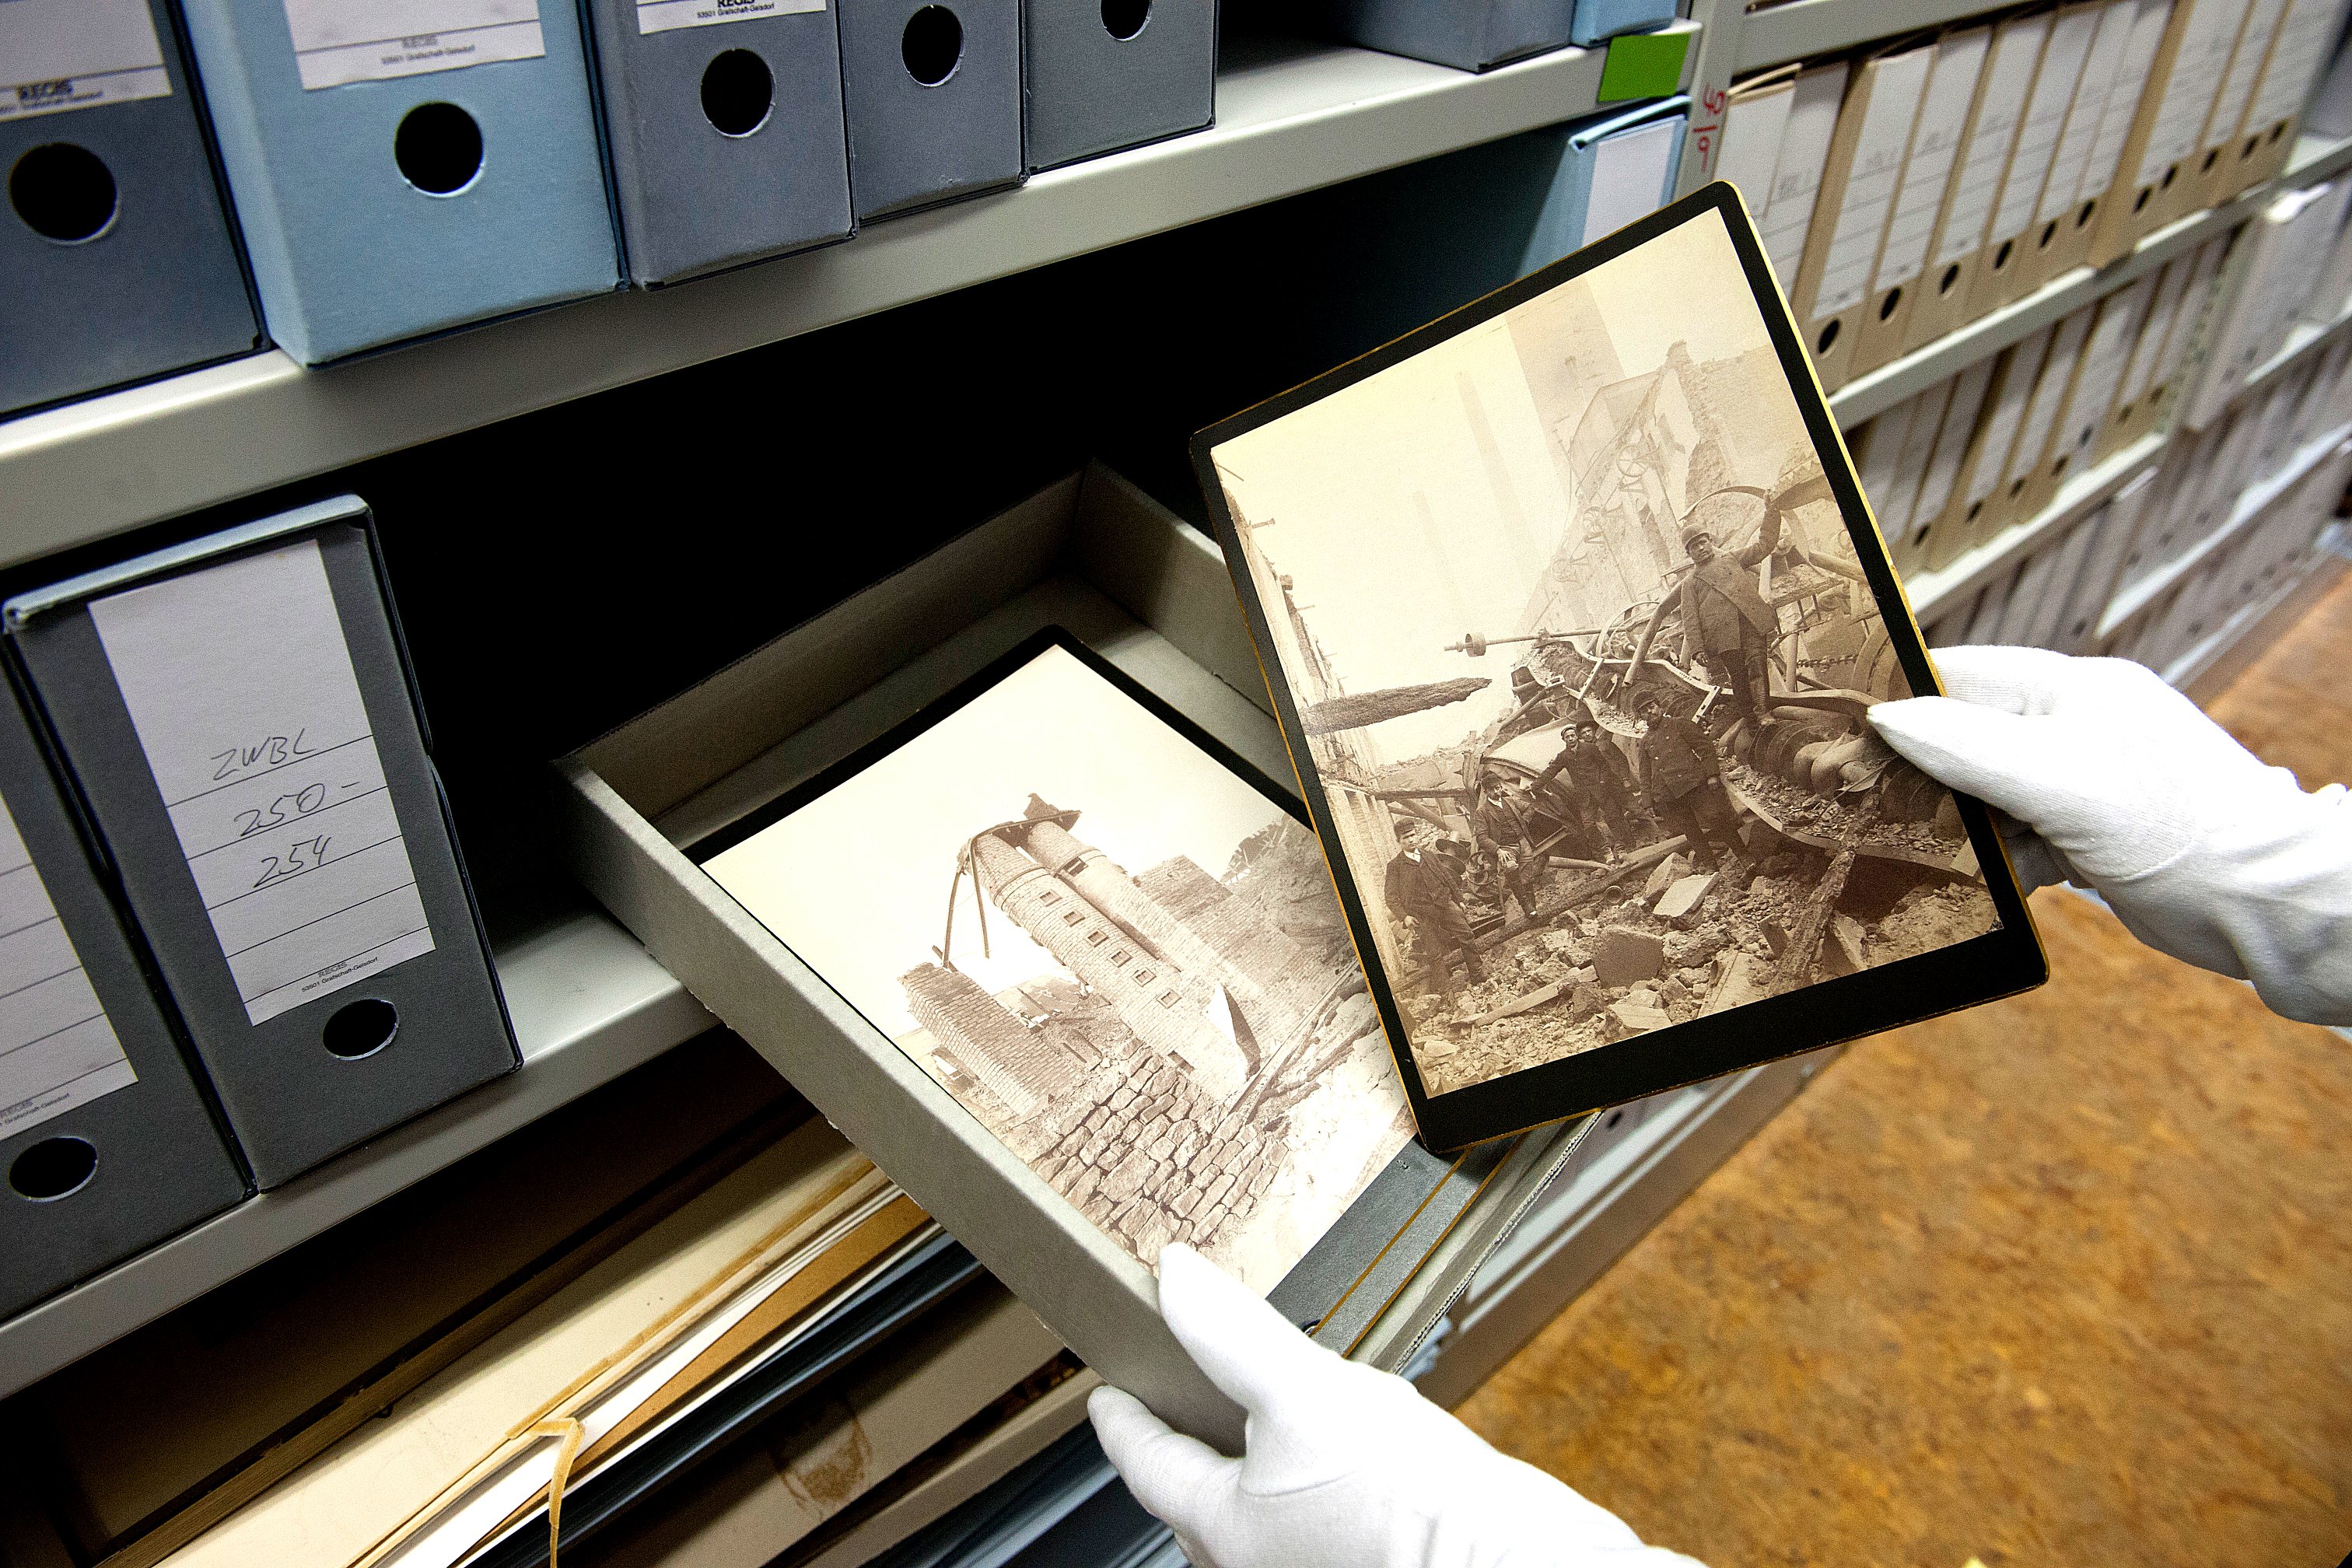 Hände mit Handschuhen nehmen historisches Bildmaterial aus einem Schuber